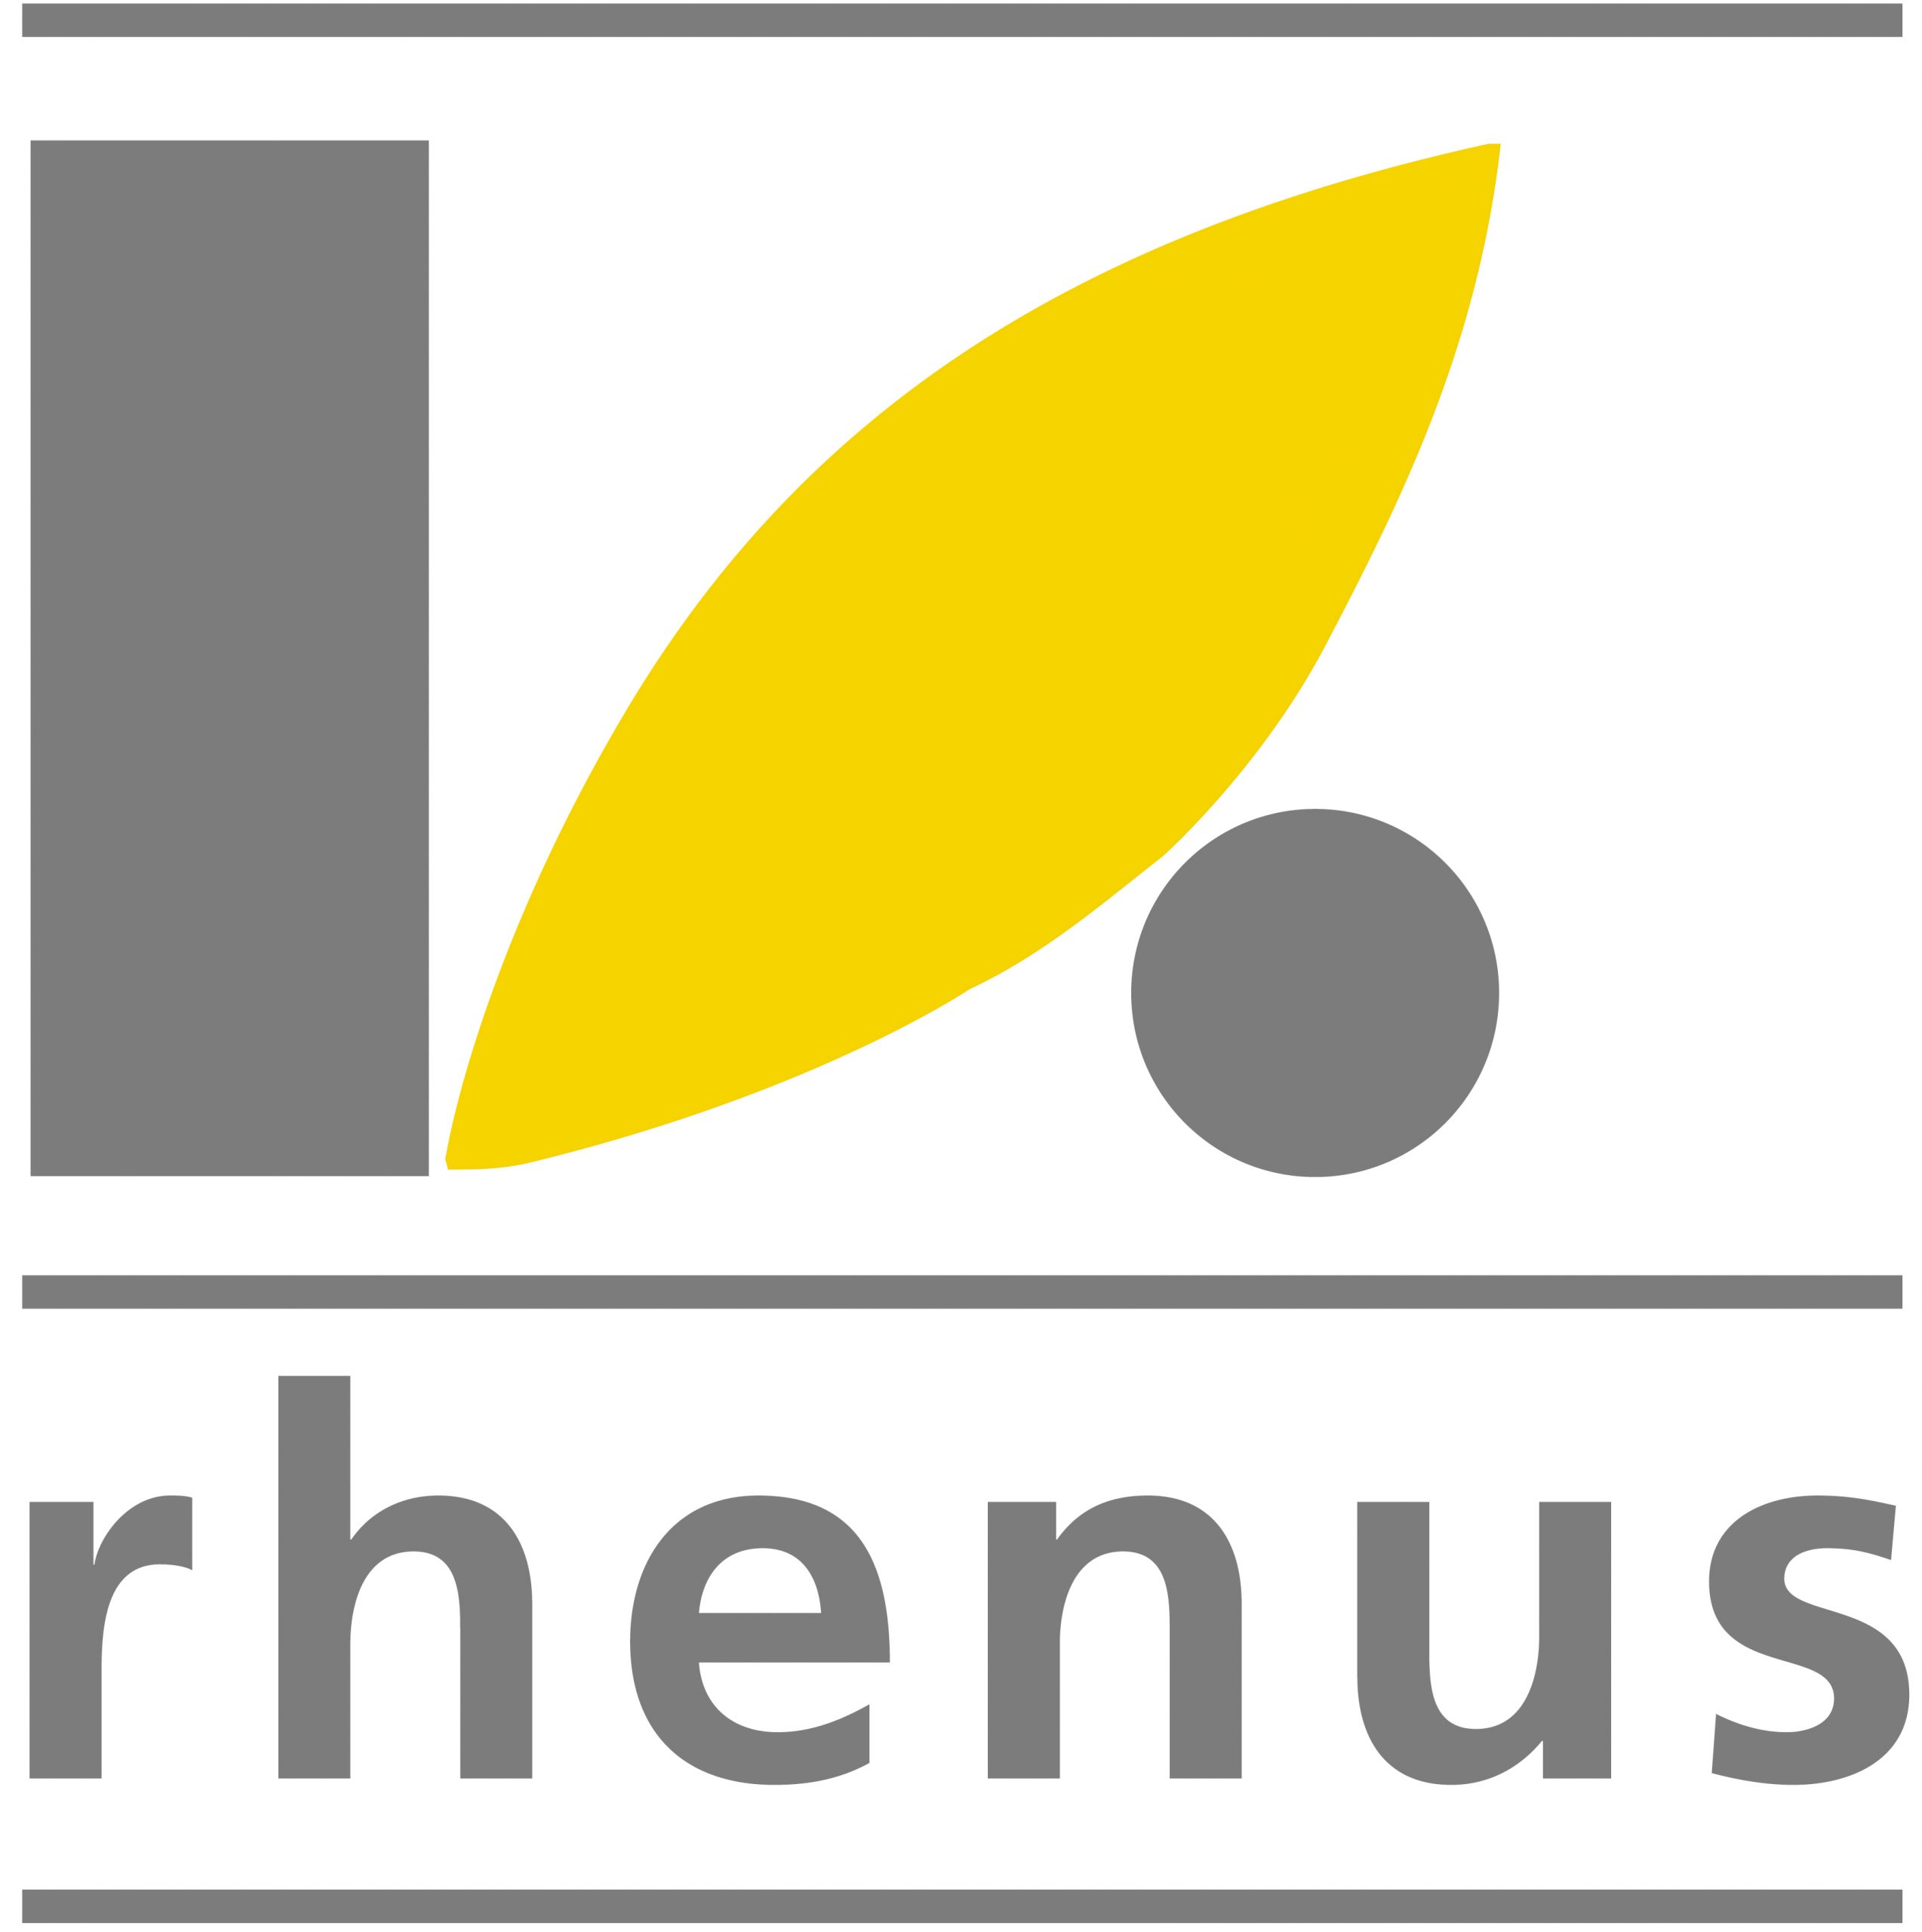 Rhenus Lub GmbH & Co KG